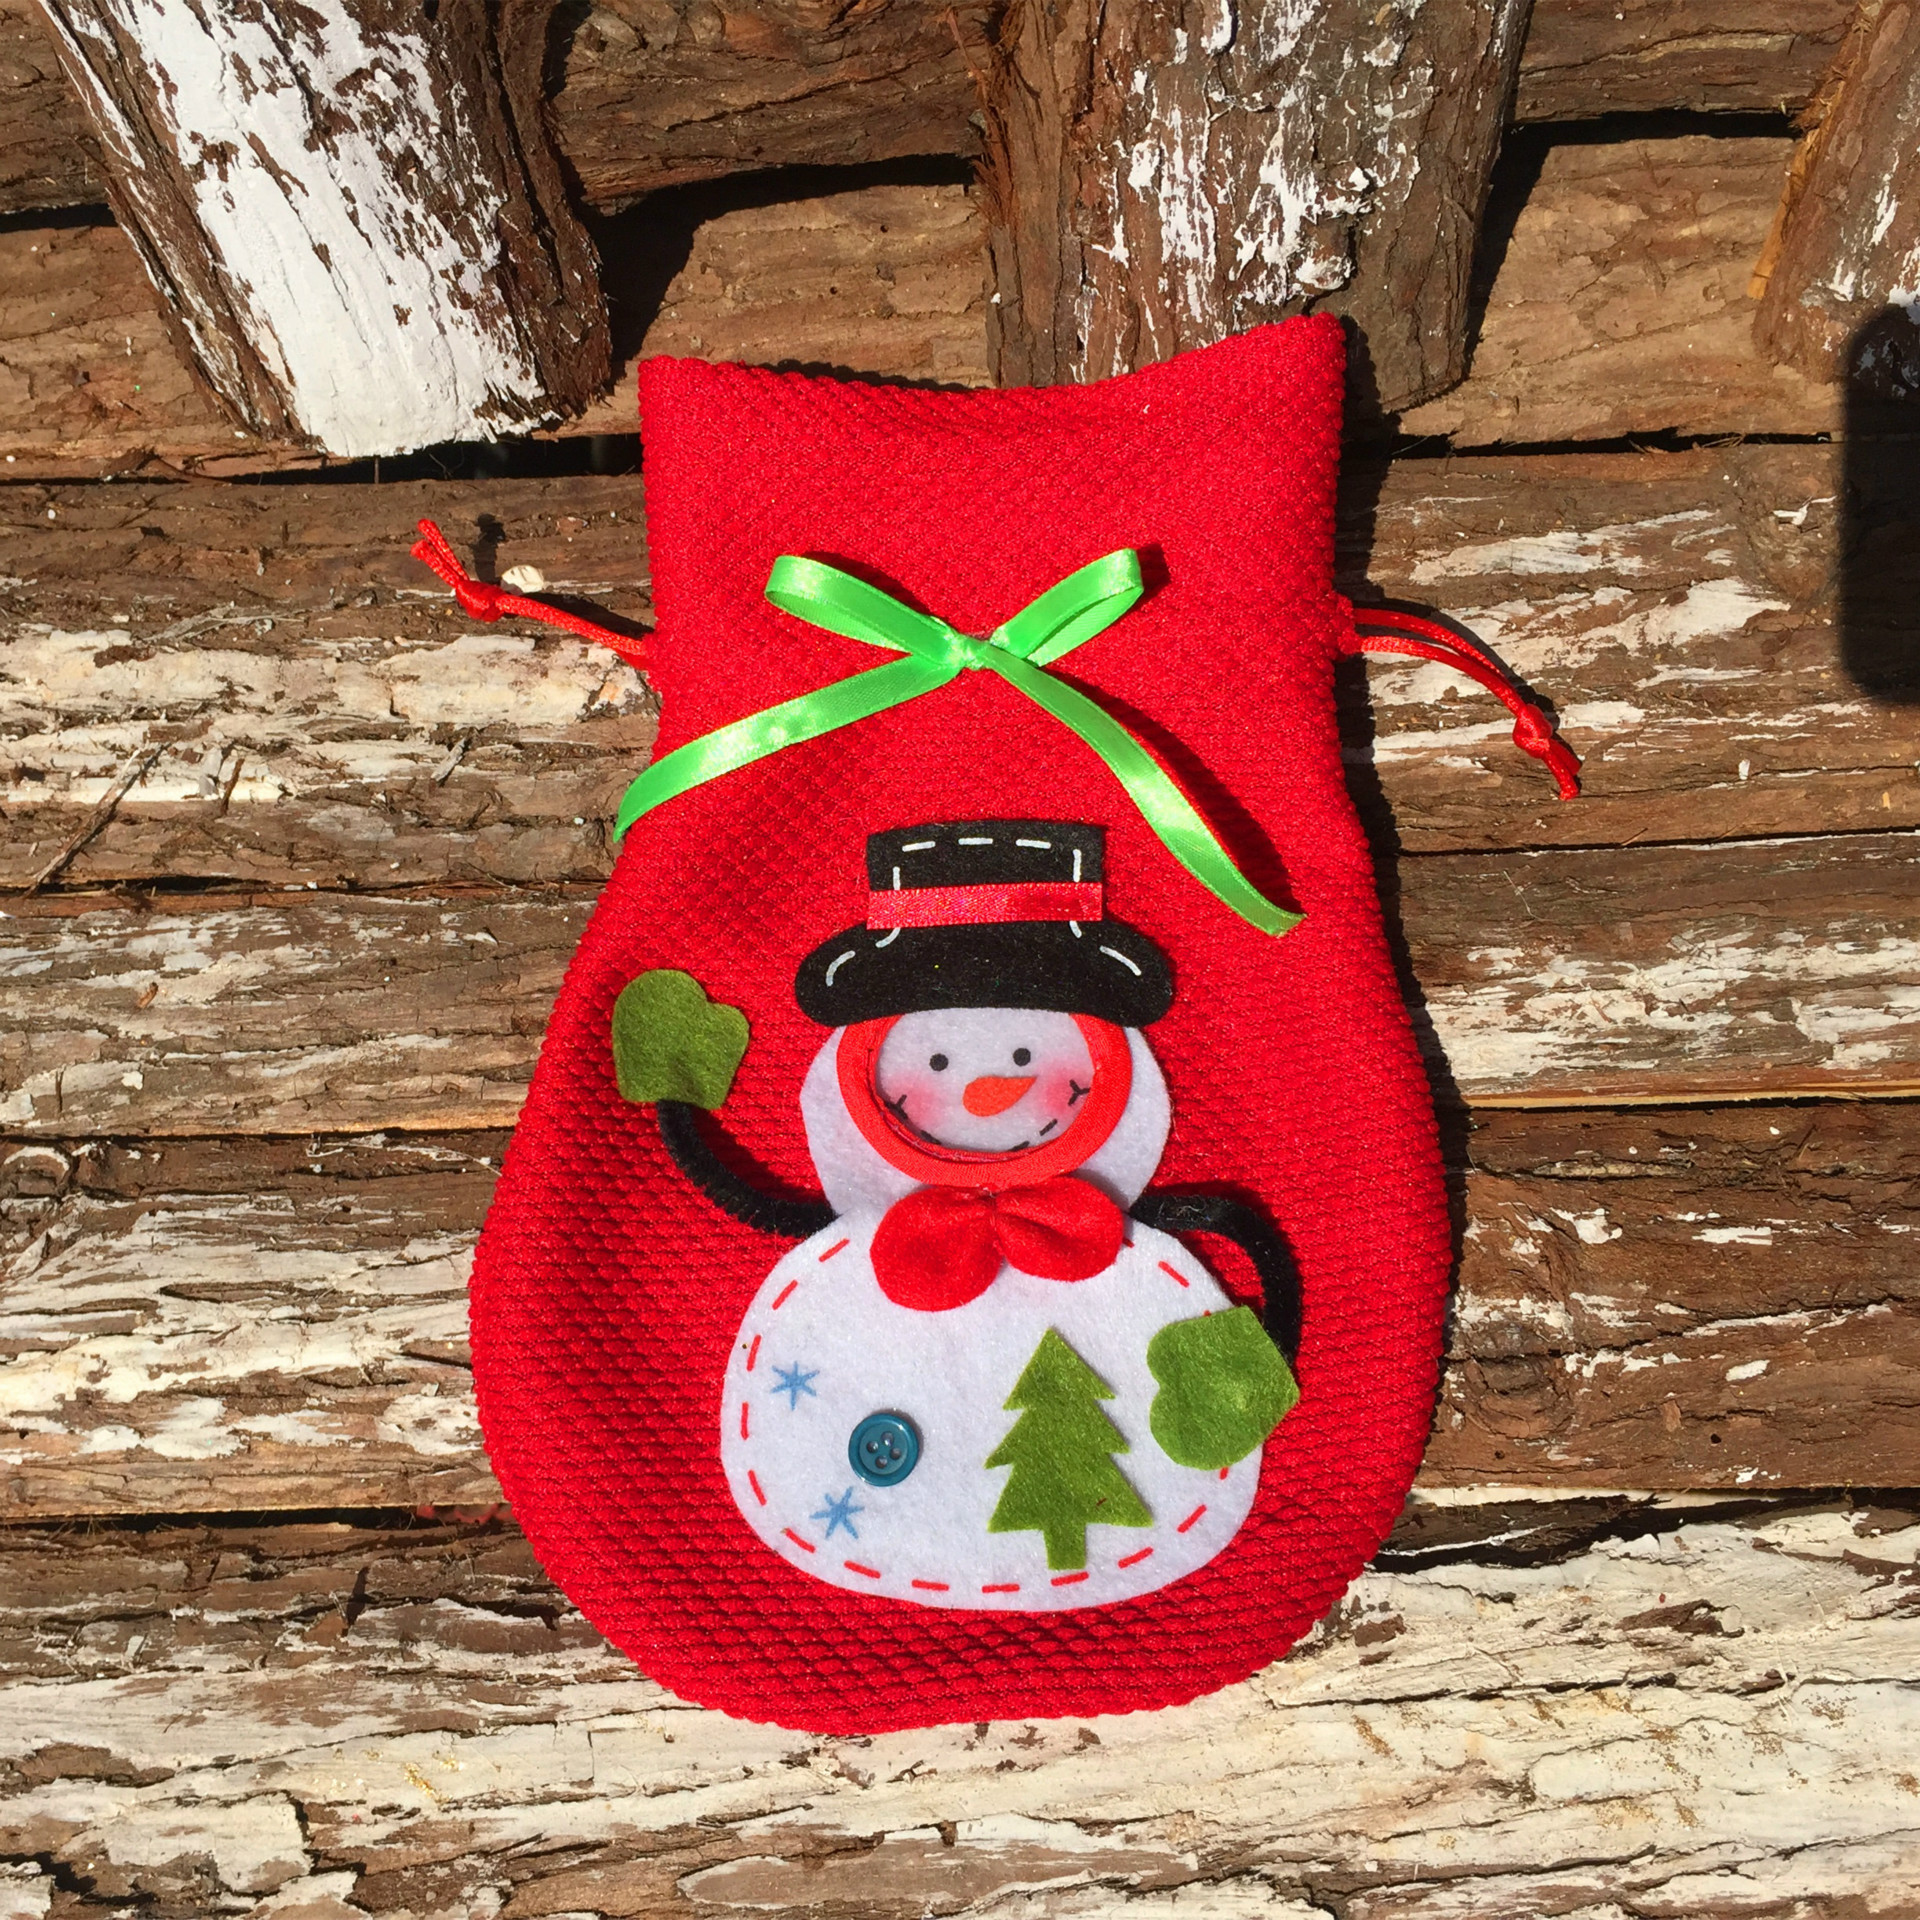 立體聖誕雪人糖果袋 禮品袋 創意家居 實用禮品 聖誕節必備 聖誕禮物袋9